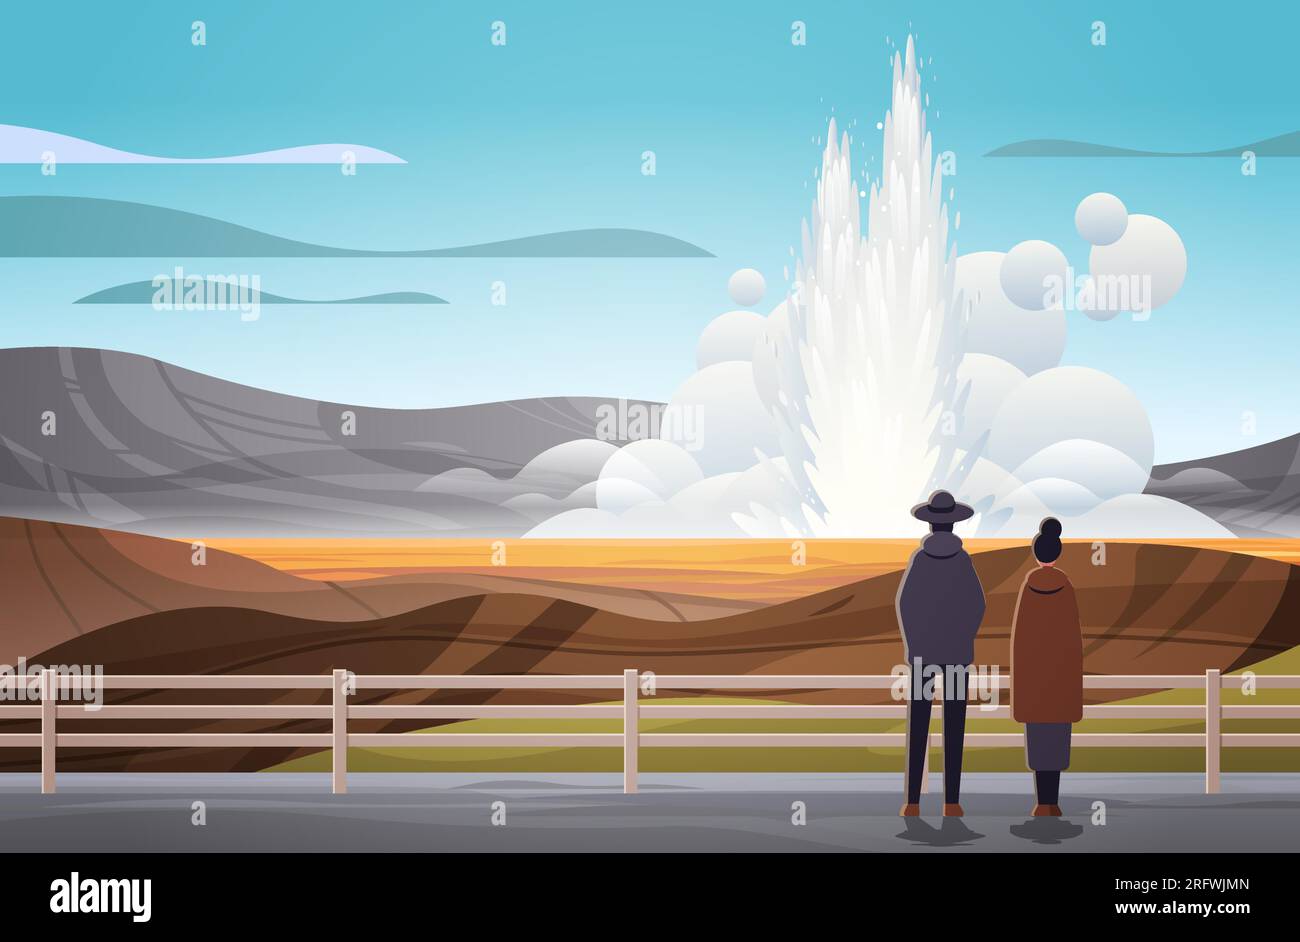 i turisti si avvicinano all'impressionante eruzione di vapore attivo di acqua calda geyser che fuoriesce da una fontana sotterranea all'aperto Illustrazione Vettoriale